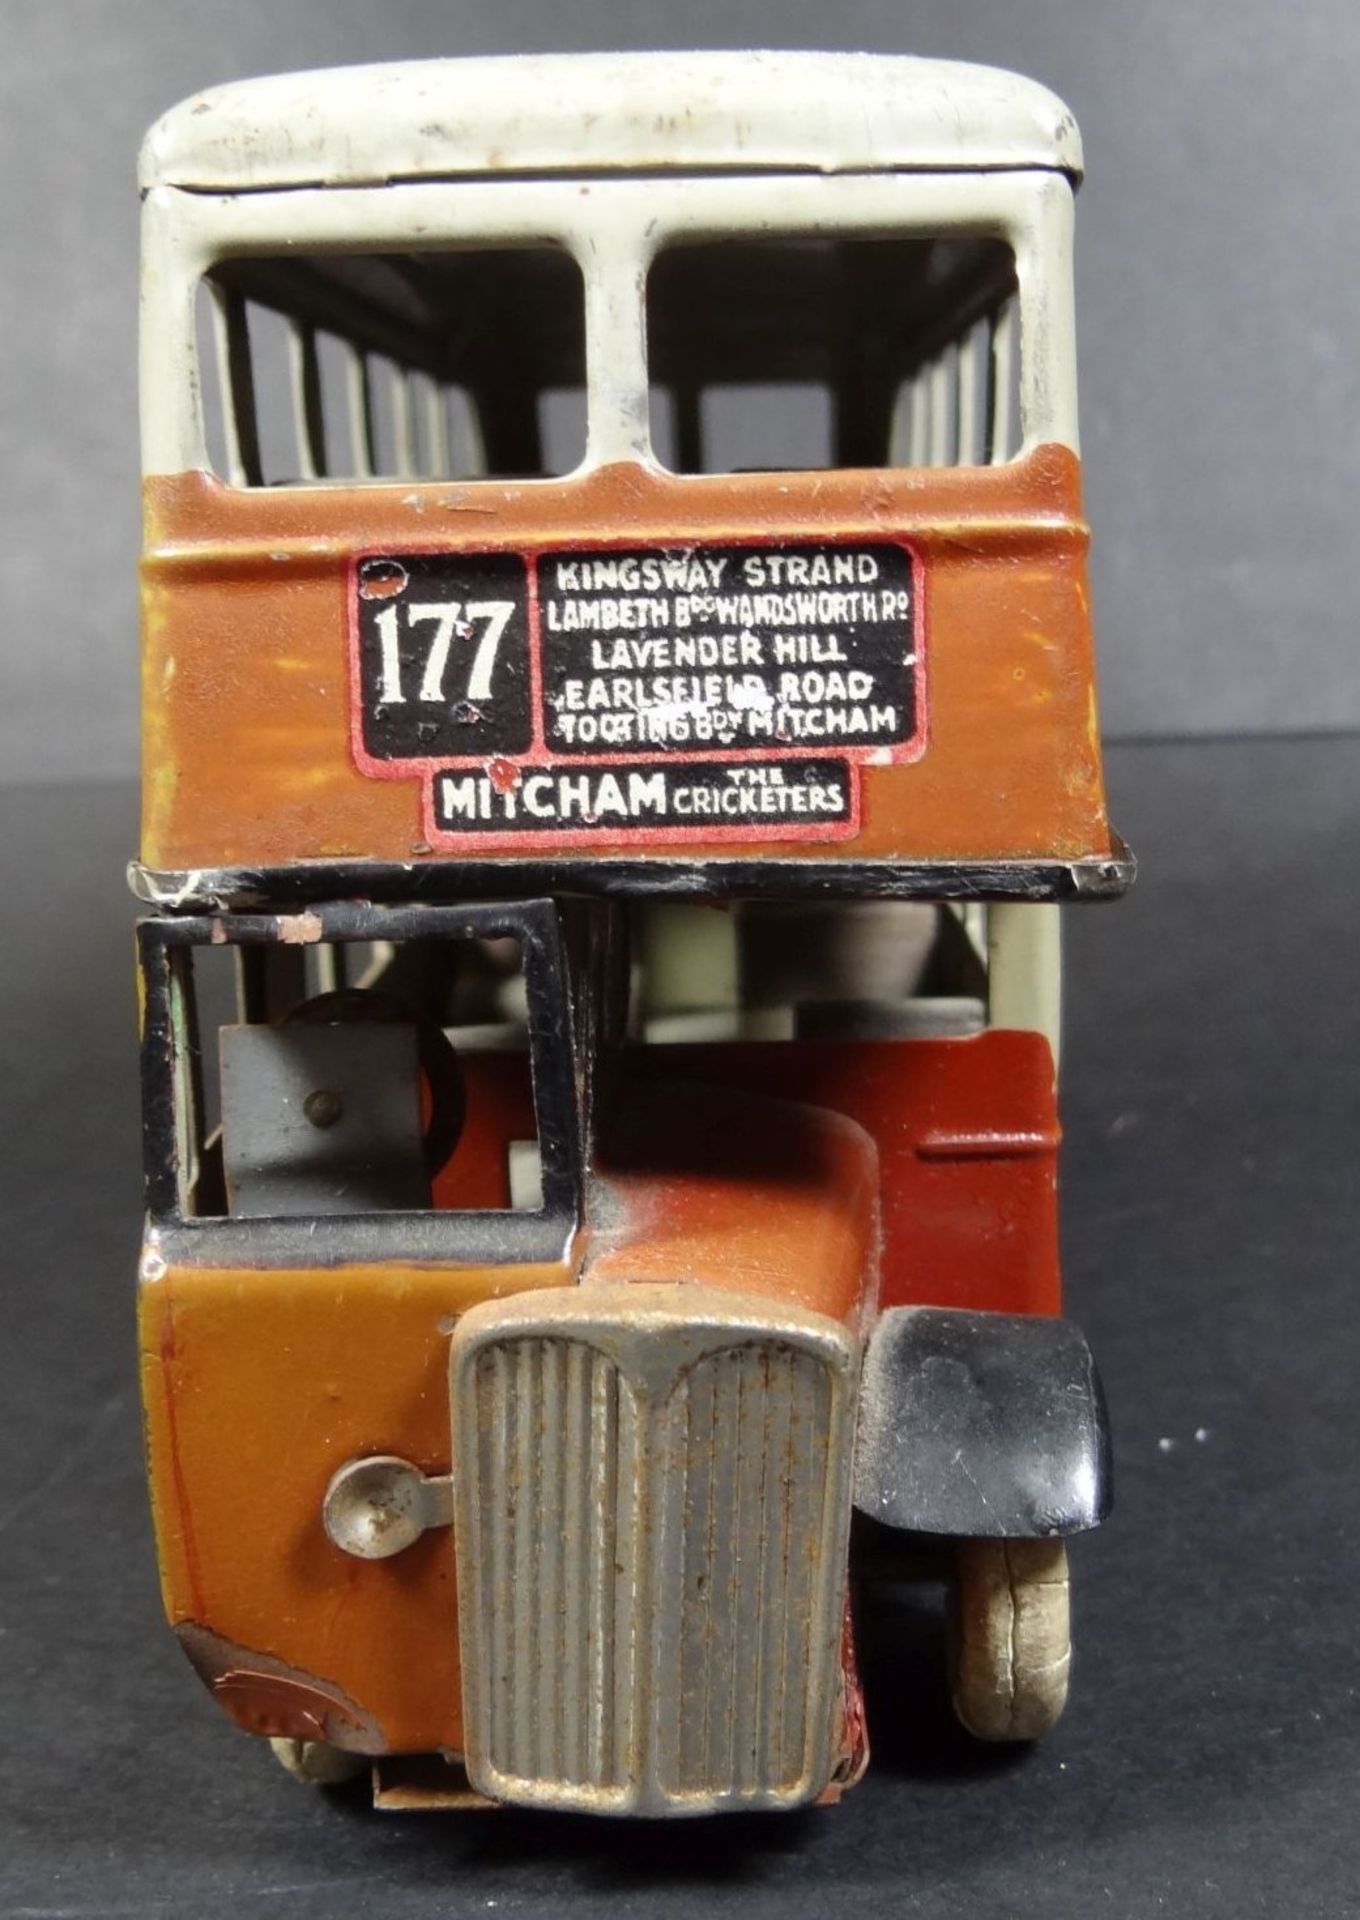 gr. Blech-Doppeldeckerbus, England, seitl. mit Ovaltine Werbung, Schlüsselwerk nicht überprüft, H-10 - Bild 3 aus 10